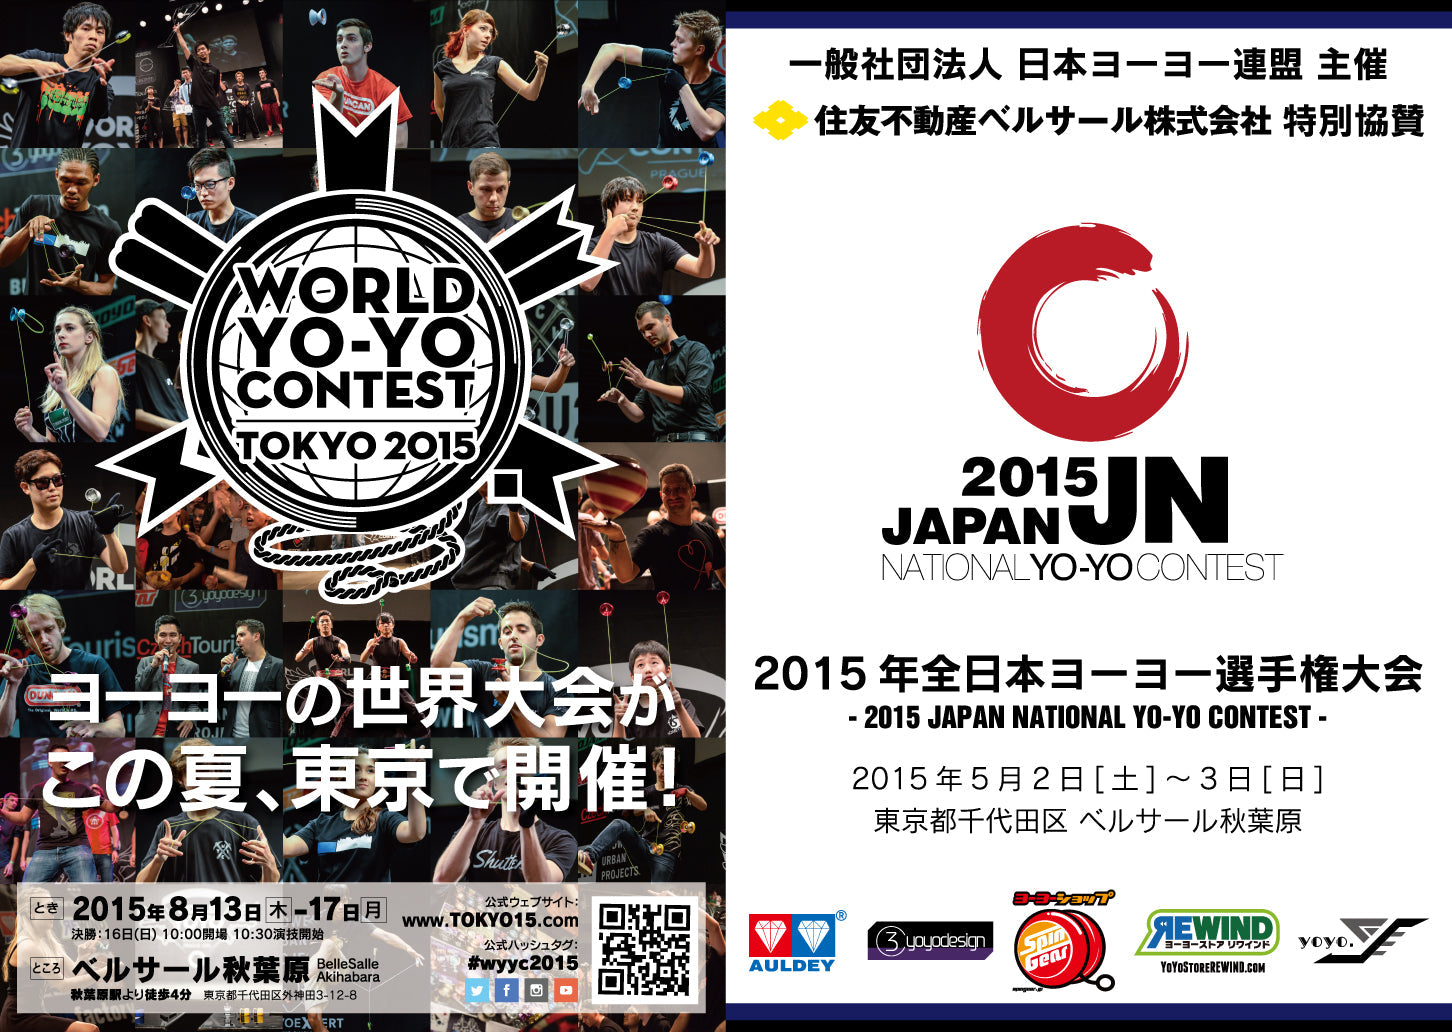 THROWDOWN! 2016 Pamphlet - JYYF (Japan Yo-Yo Federation)